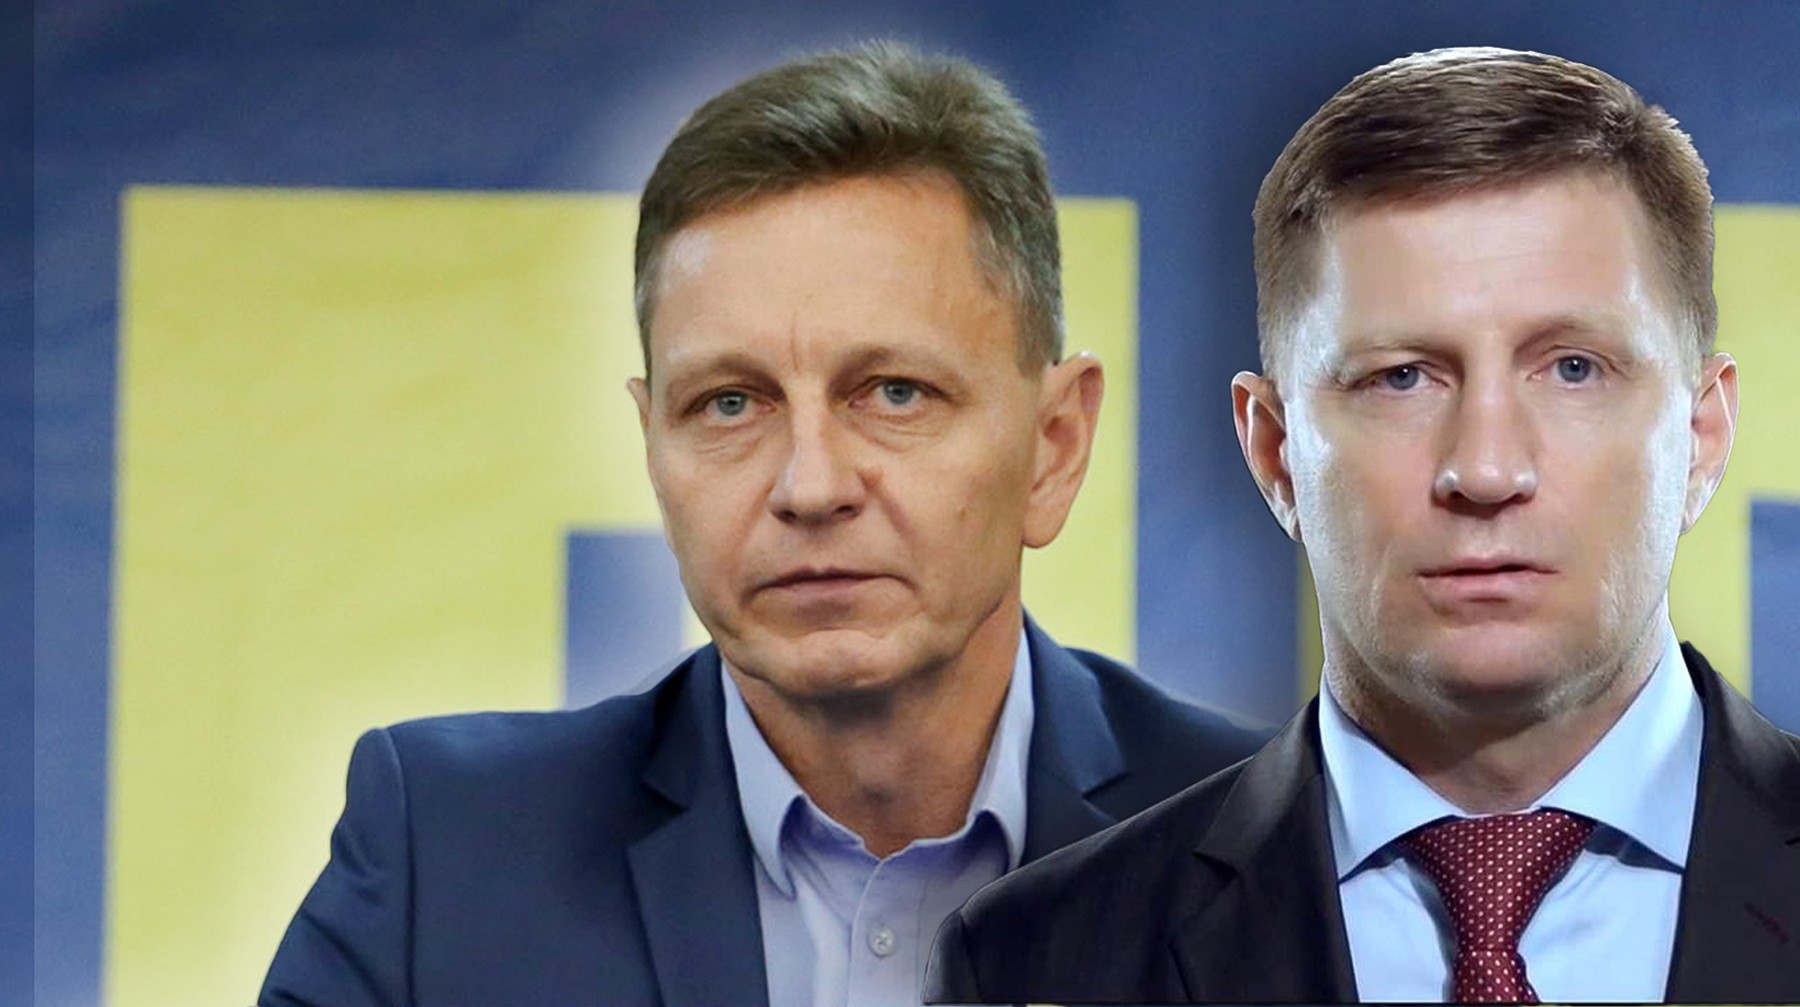 Dailystorm - Как дела у губернаторов Владимира Сипягина и Сергея Фургала, полтора месяца назад избранных во втором туре от ЛДПР?